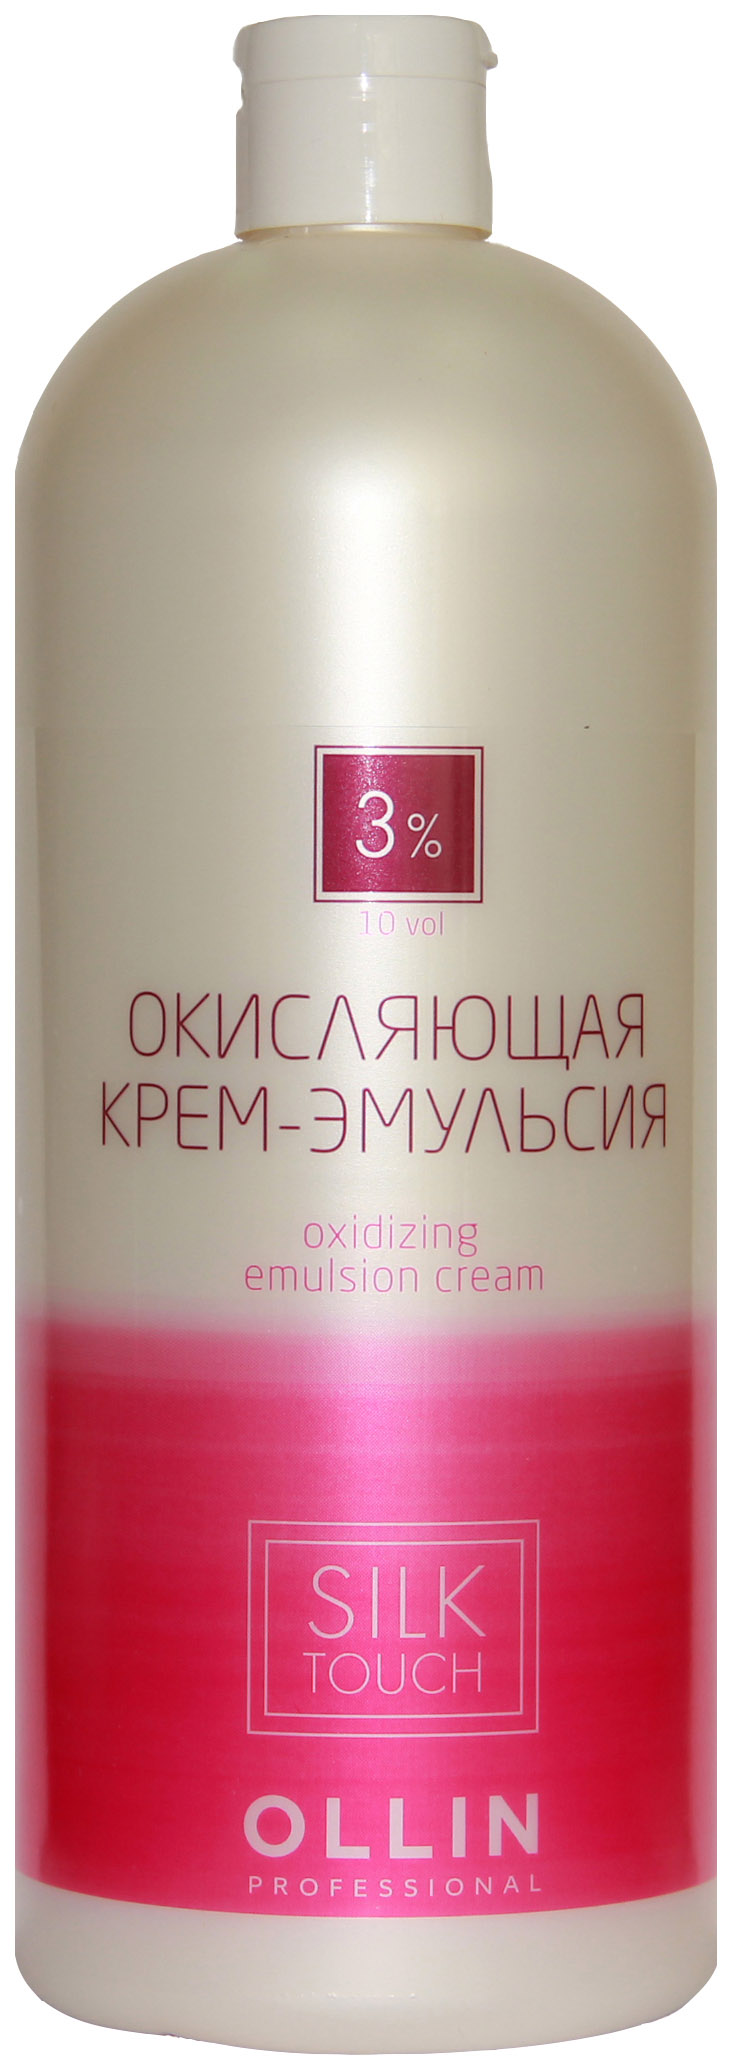 Проявитель Ollin Professional Silk Touch 3% 1000 мл крем проявитель 12% 40 vol